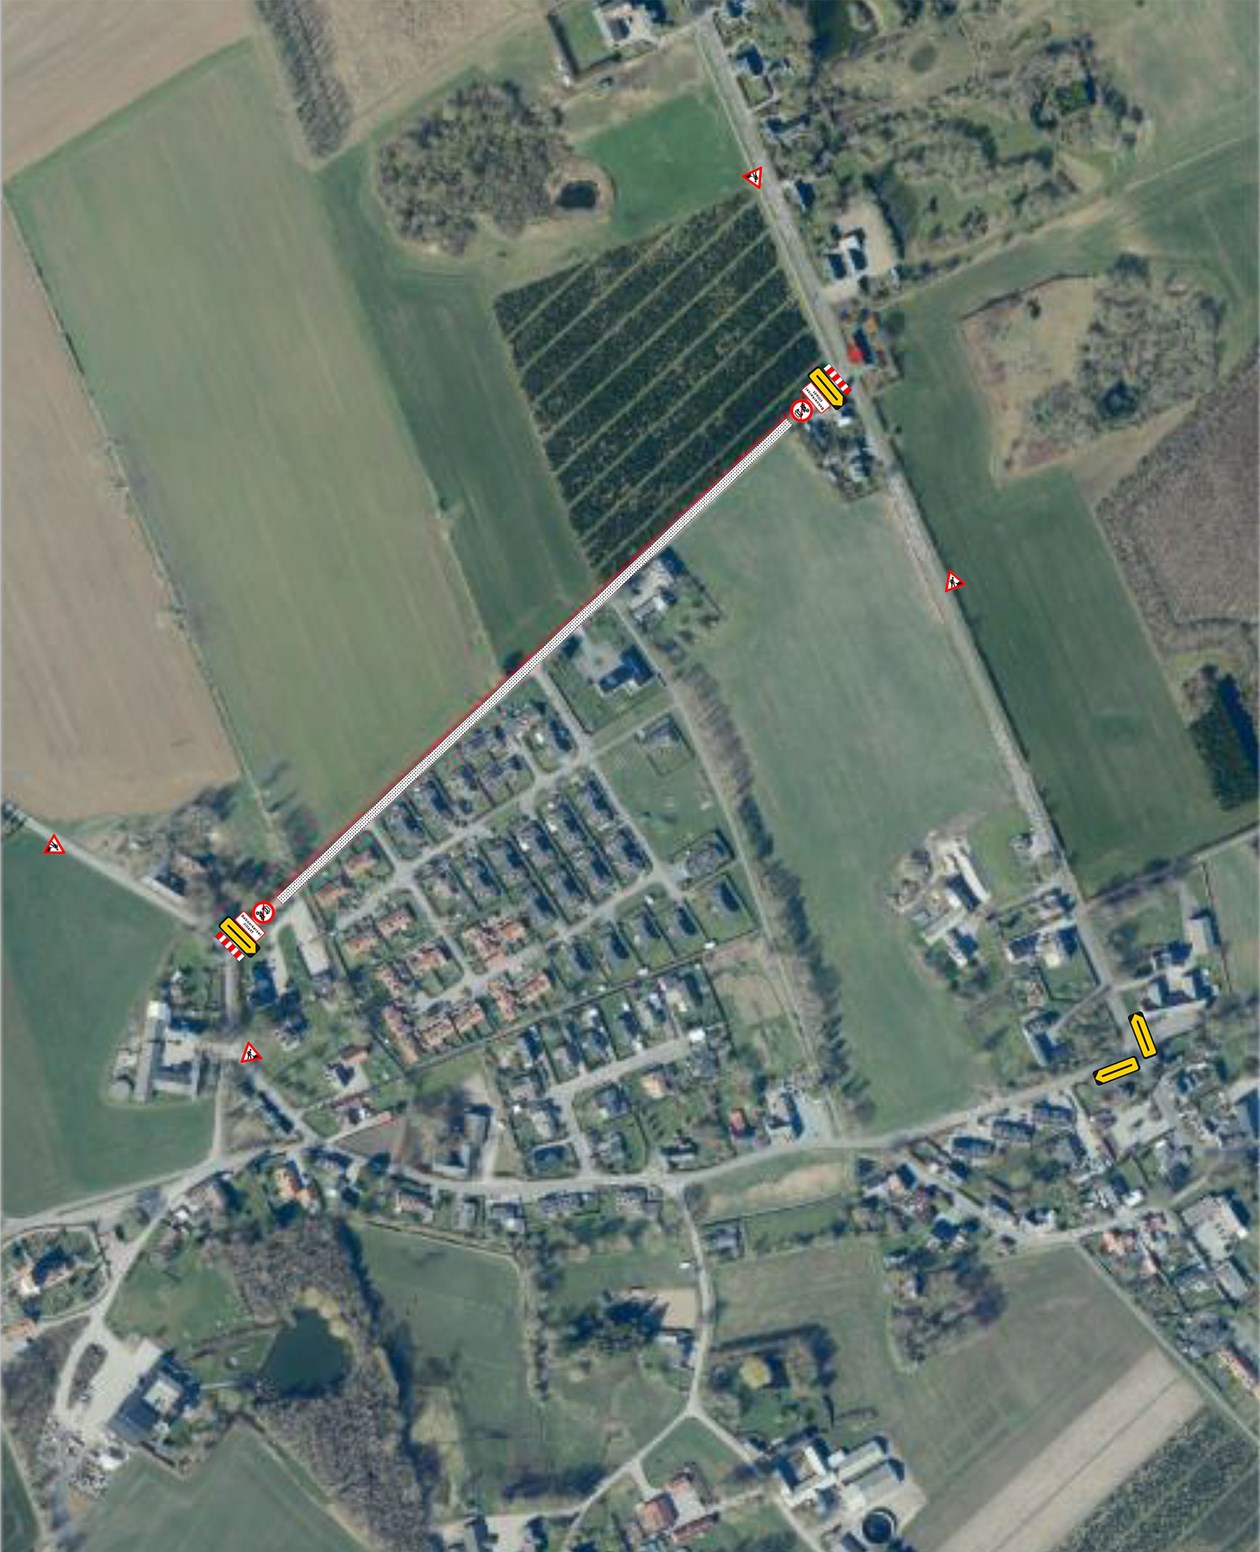 Afspærringsplan over område ved Bøgebjergvej i Refsvindinge